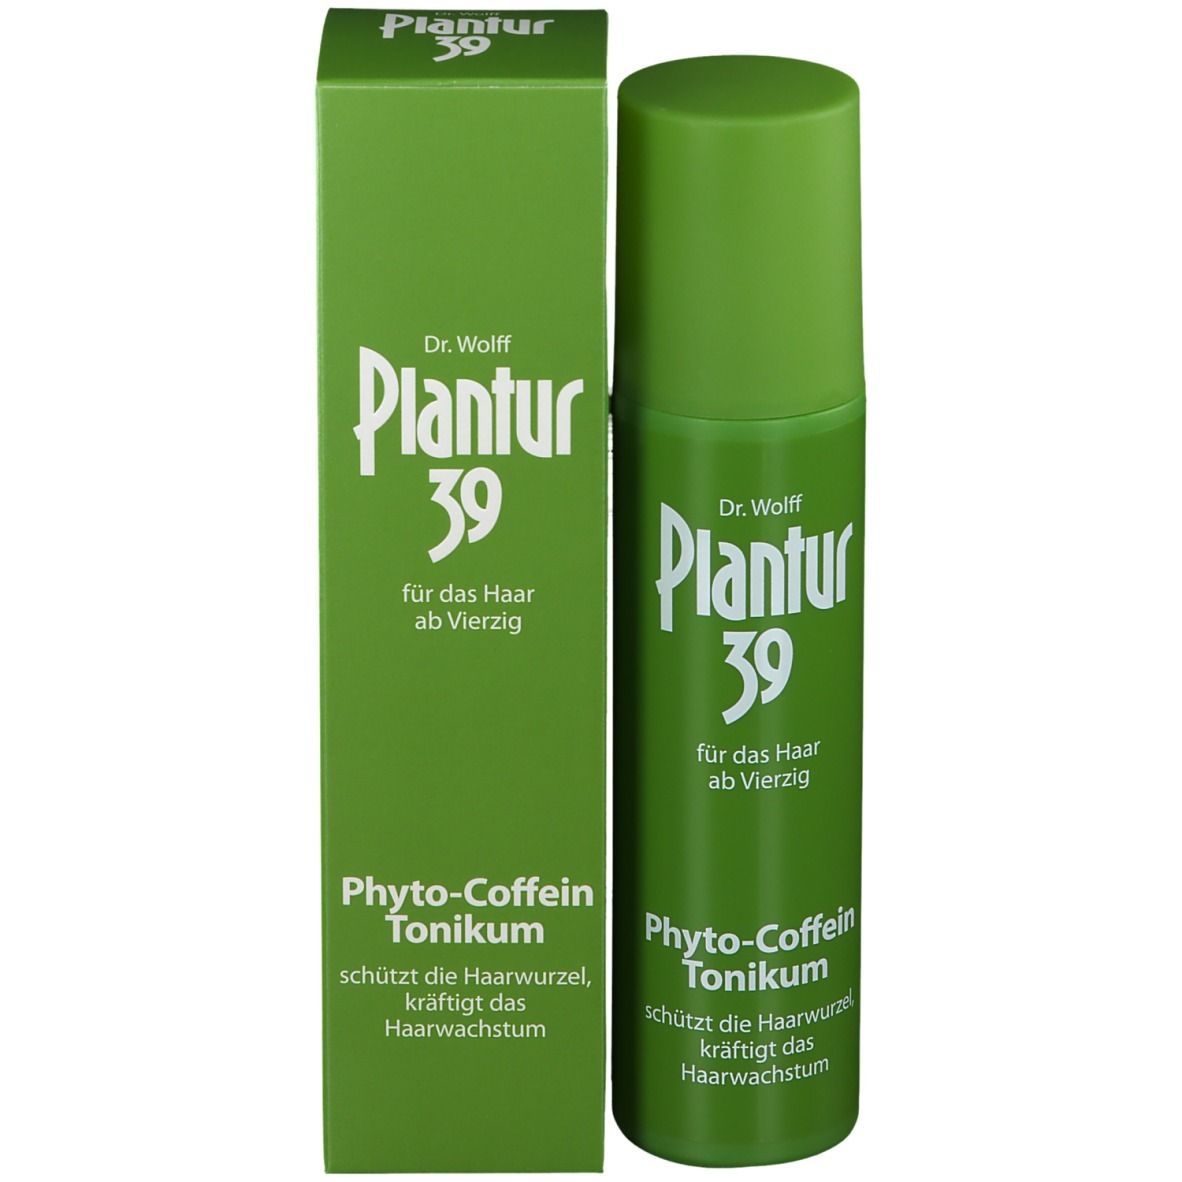 Plantur 39 Phyto-Coffein-Tonikum